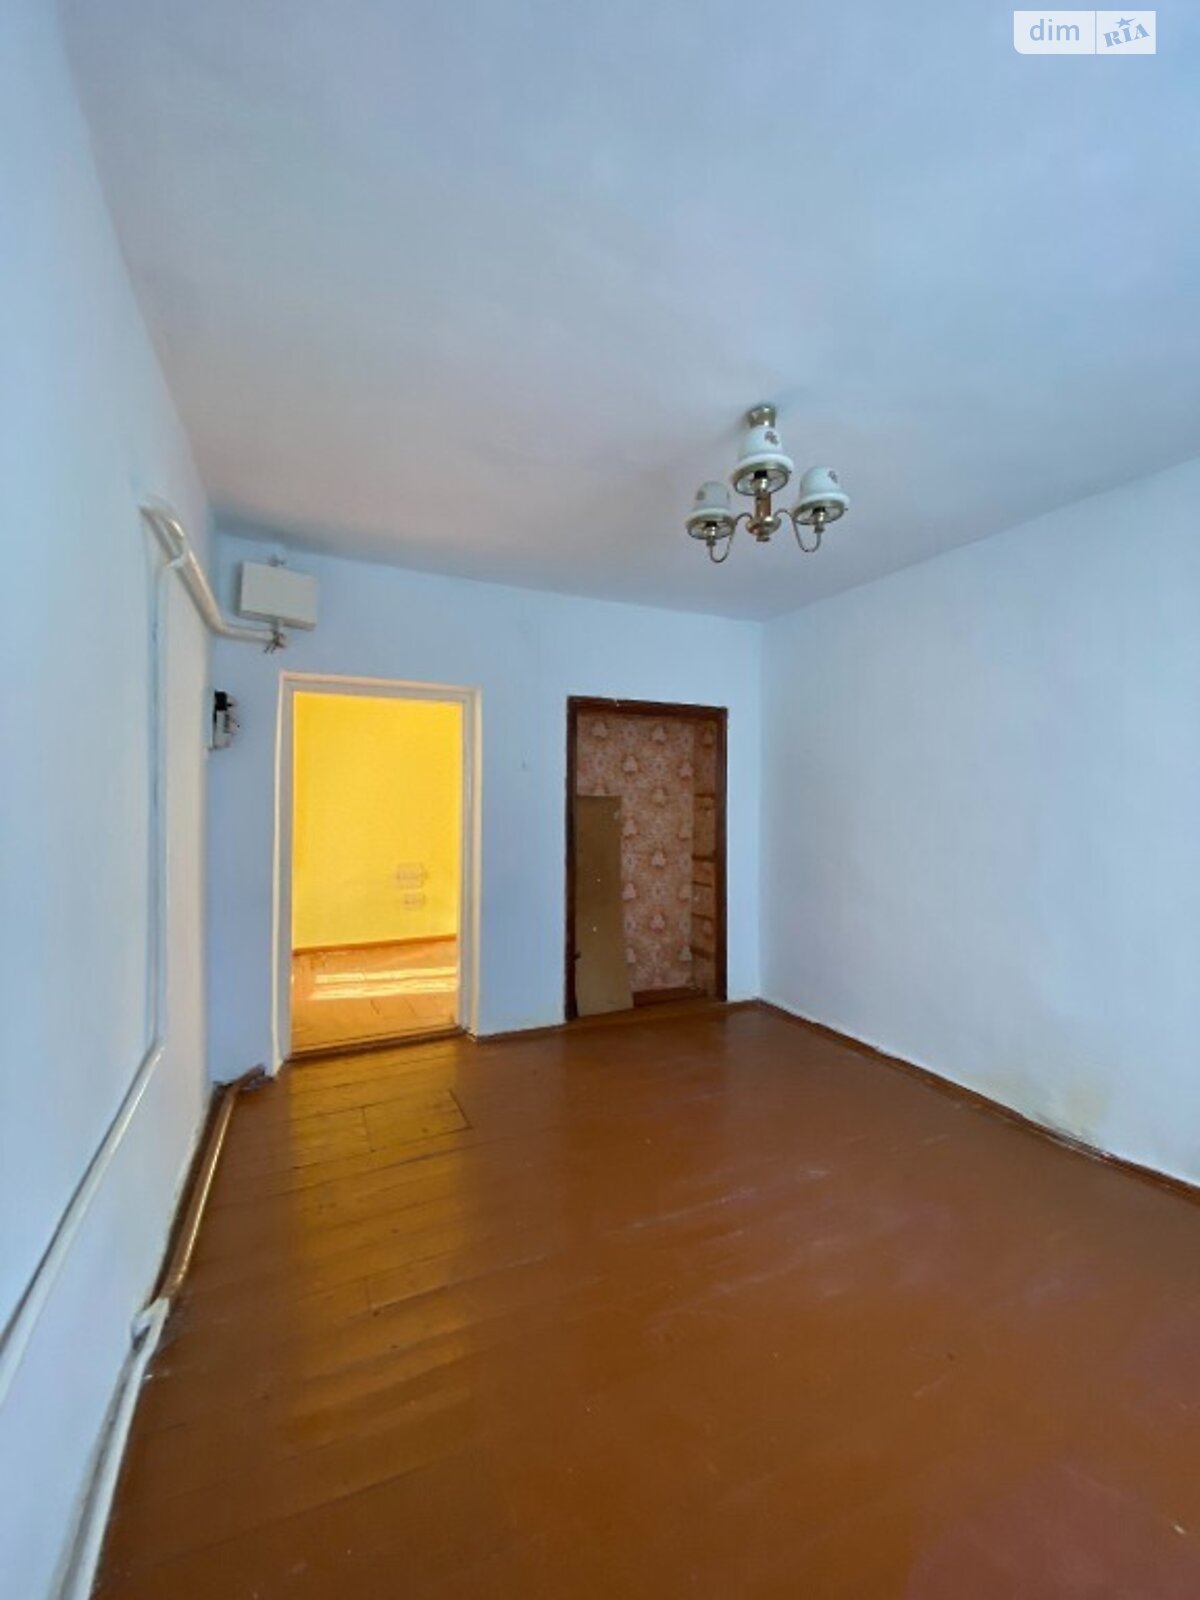 Продажа части дома в Хмельницком, район Гречаны дальние, 3 комнаты фото 1